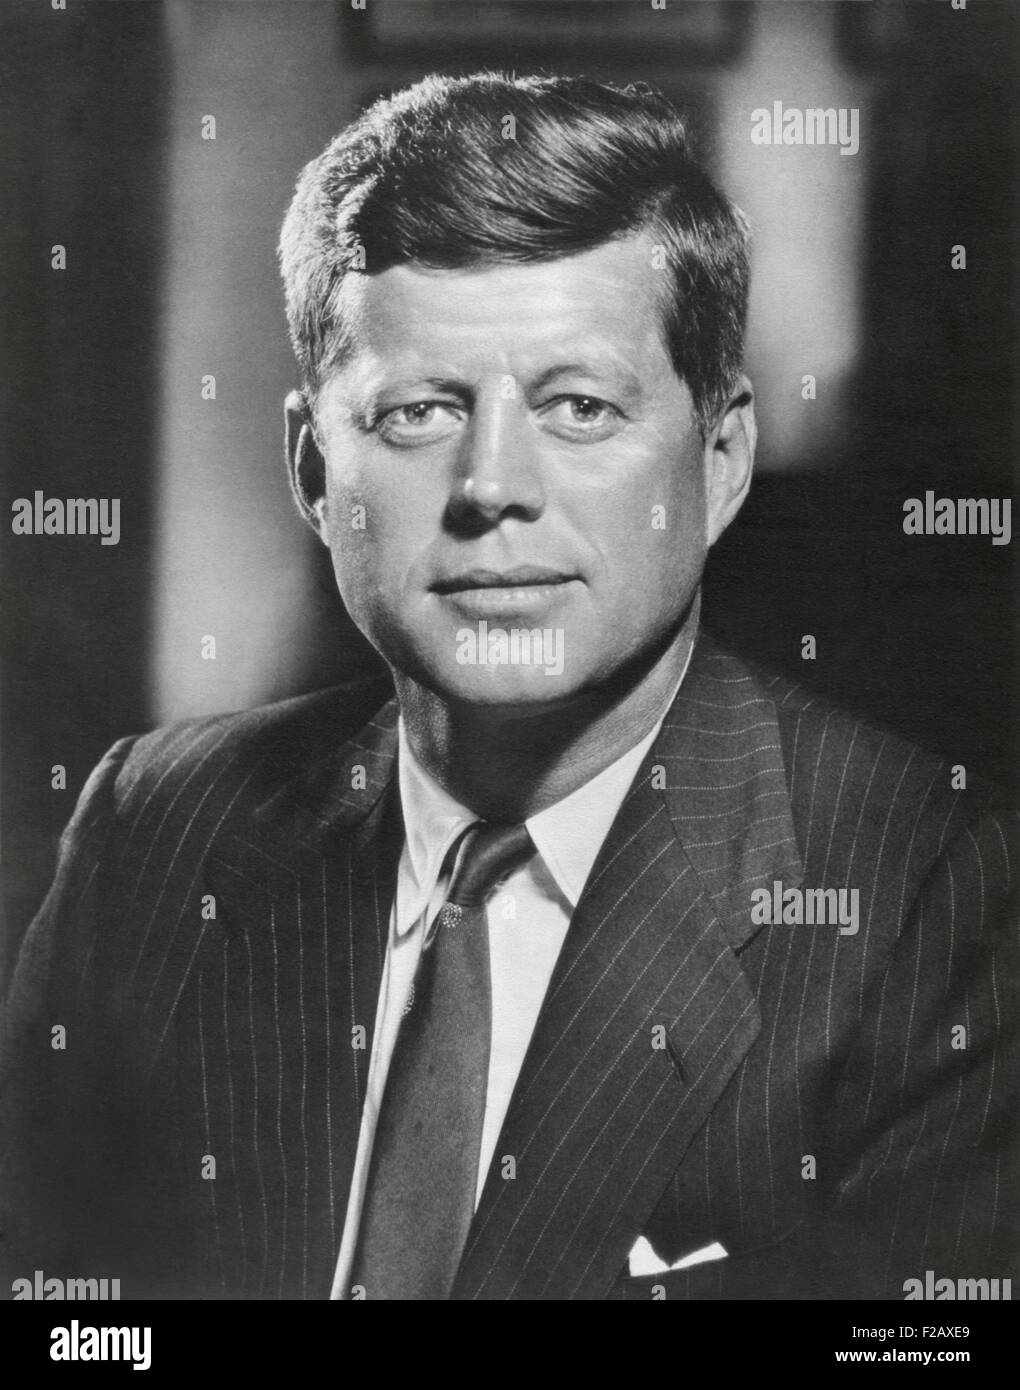 Le président John Kennedy. Portrait pris par Bachrach, ca. 1960-61. (BSLOC 2015 2 223) Banque D'Images